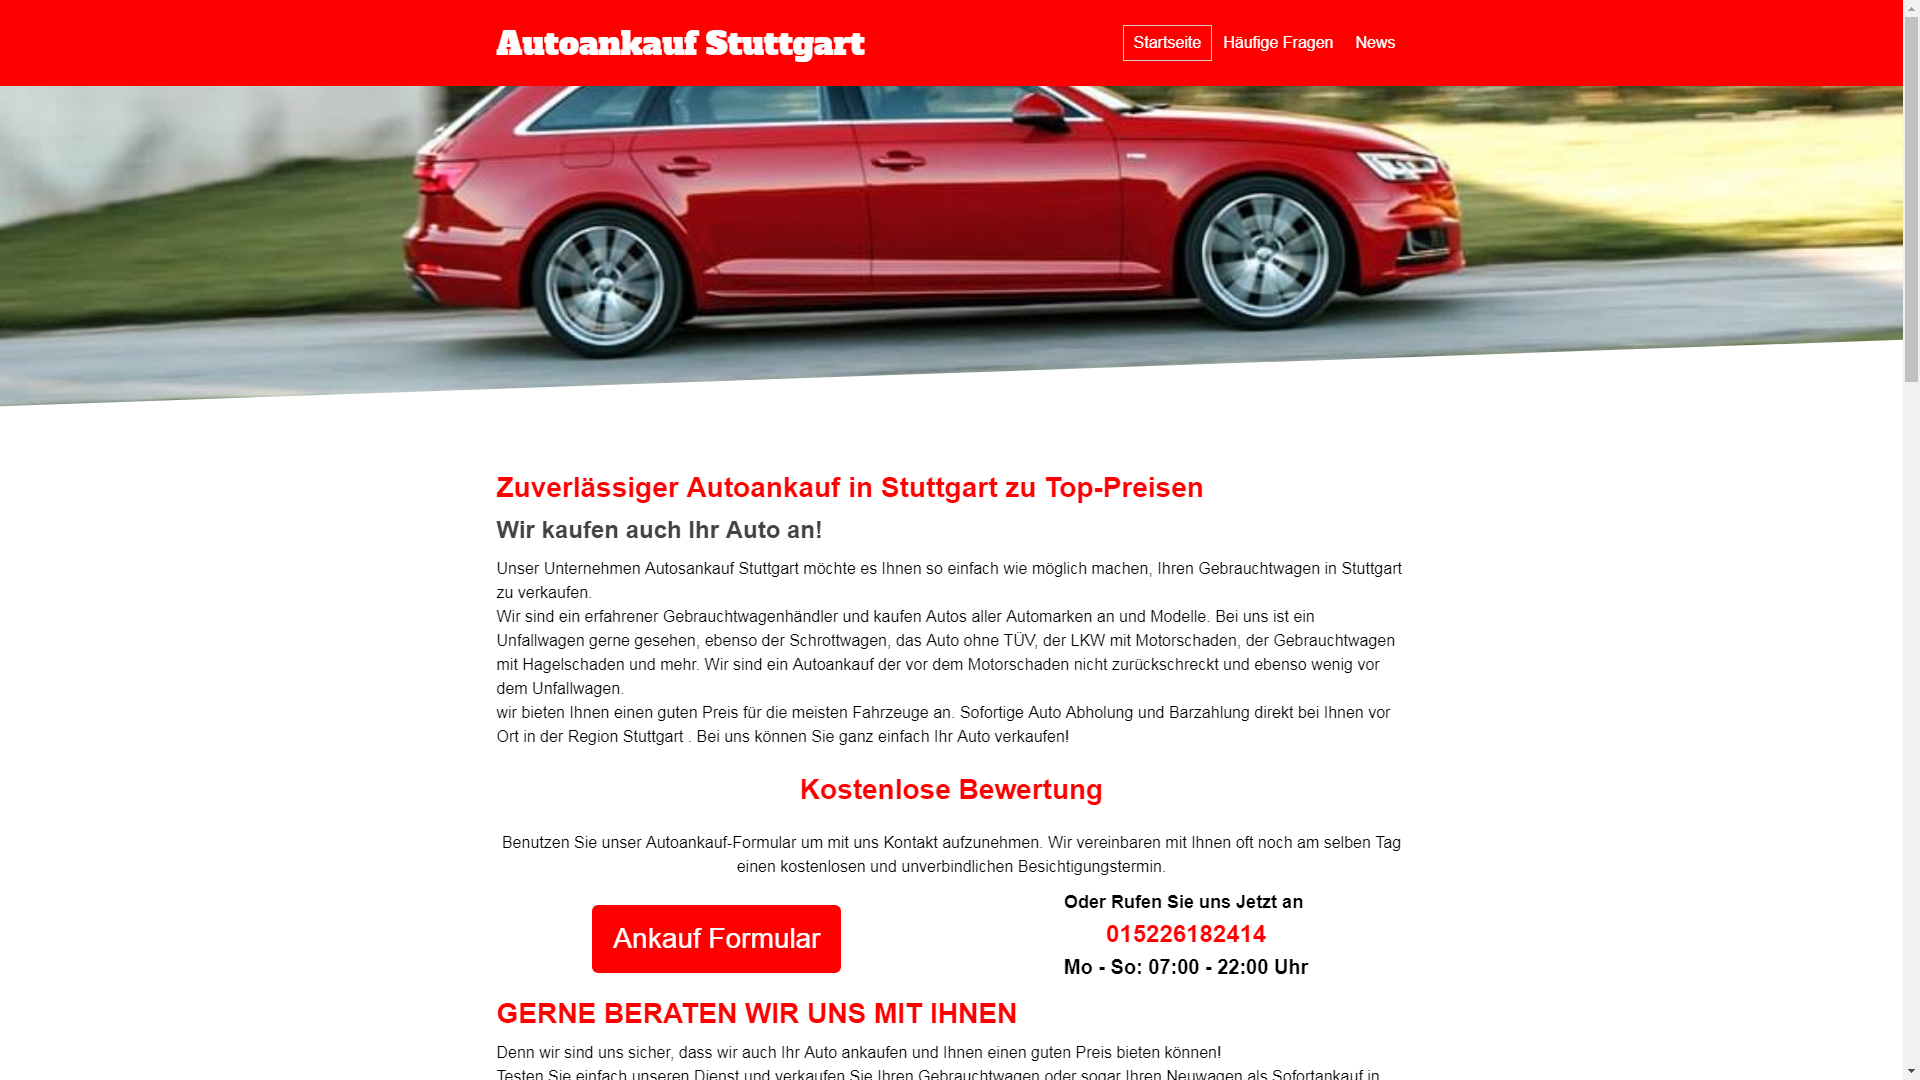 autoankauf stuttgart gebrauchtwagen autoexport unfallwagen - Autoankauf Stuttgart Gebrauchtwagen Autoexport & Unfallwagen